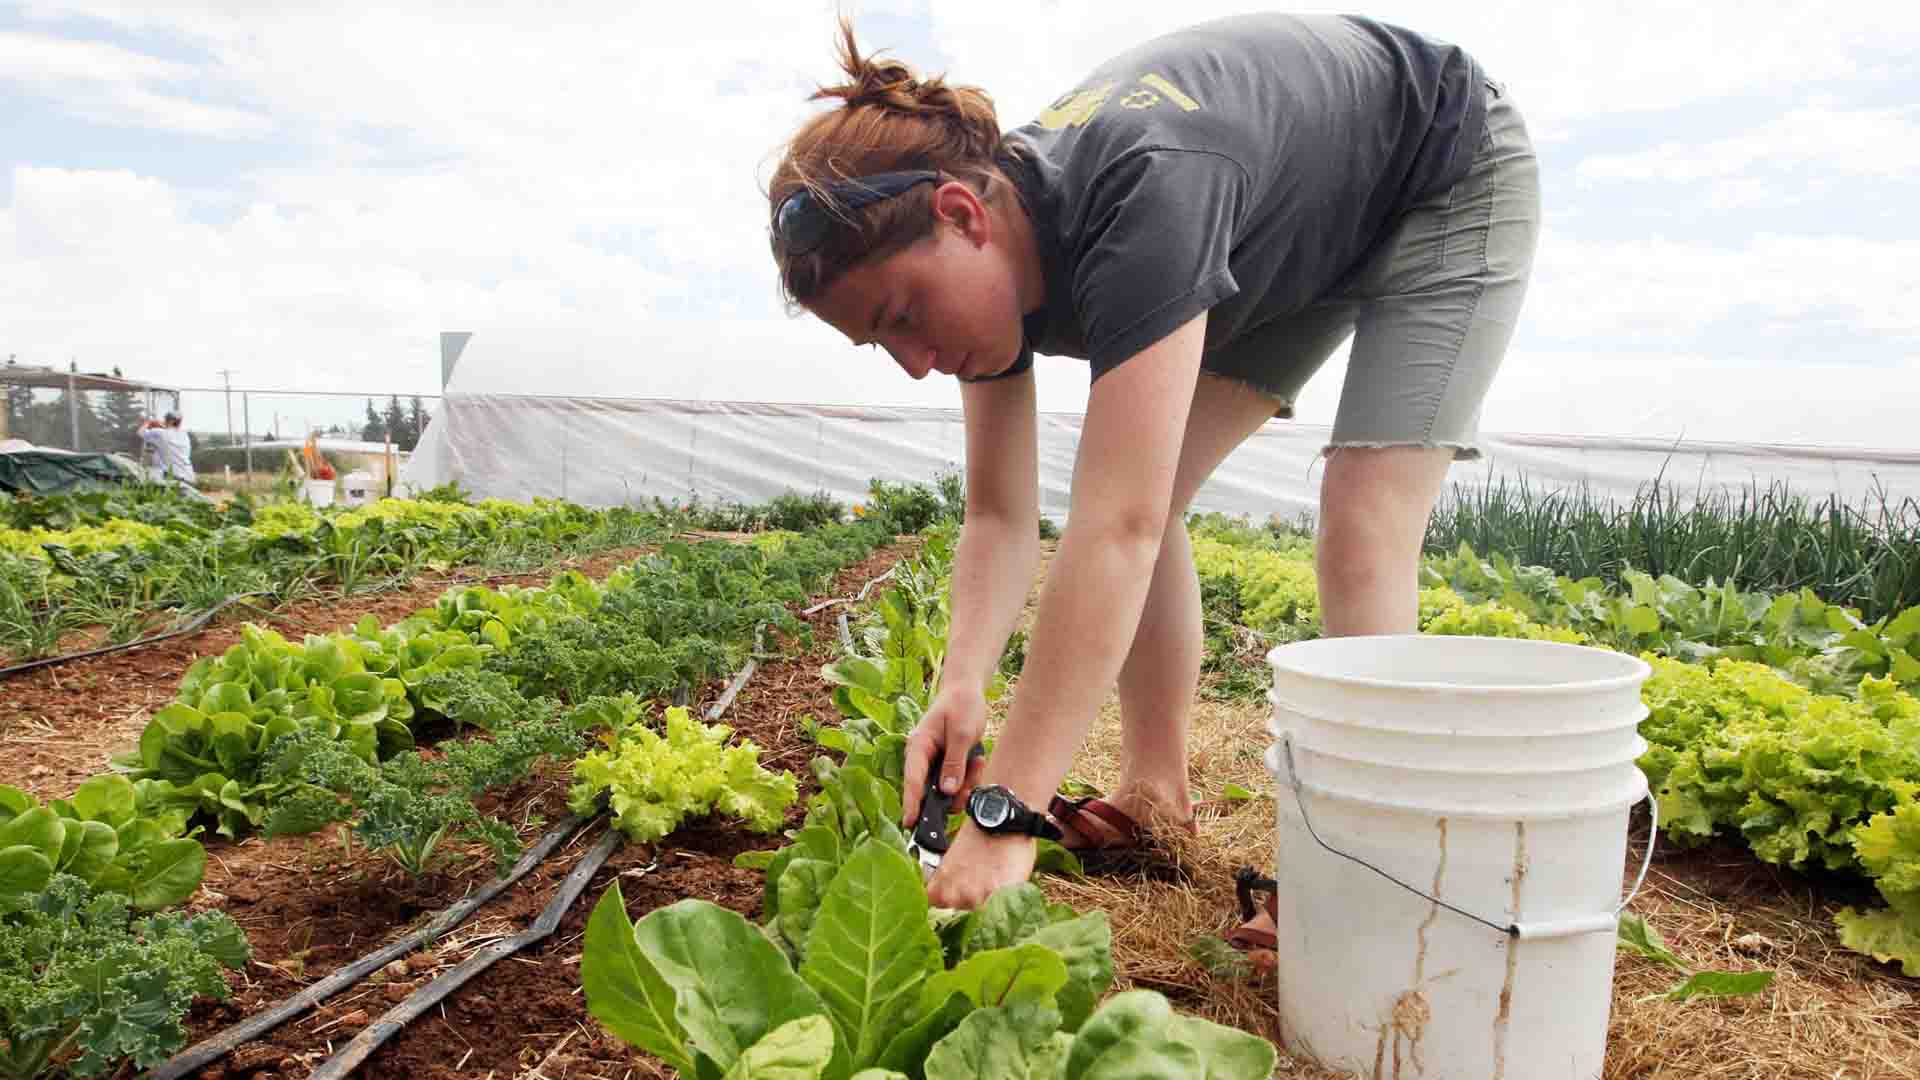 Voluntariado en granjas y campos de trabajo, una opción de verano para los jóvenes